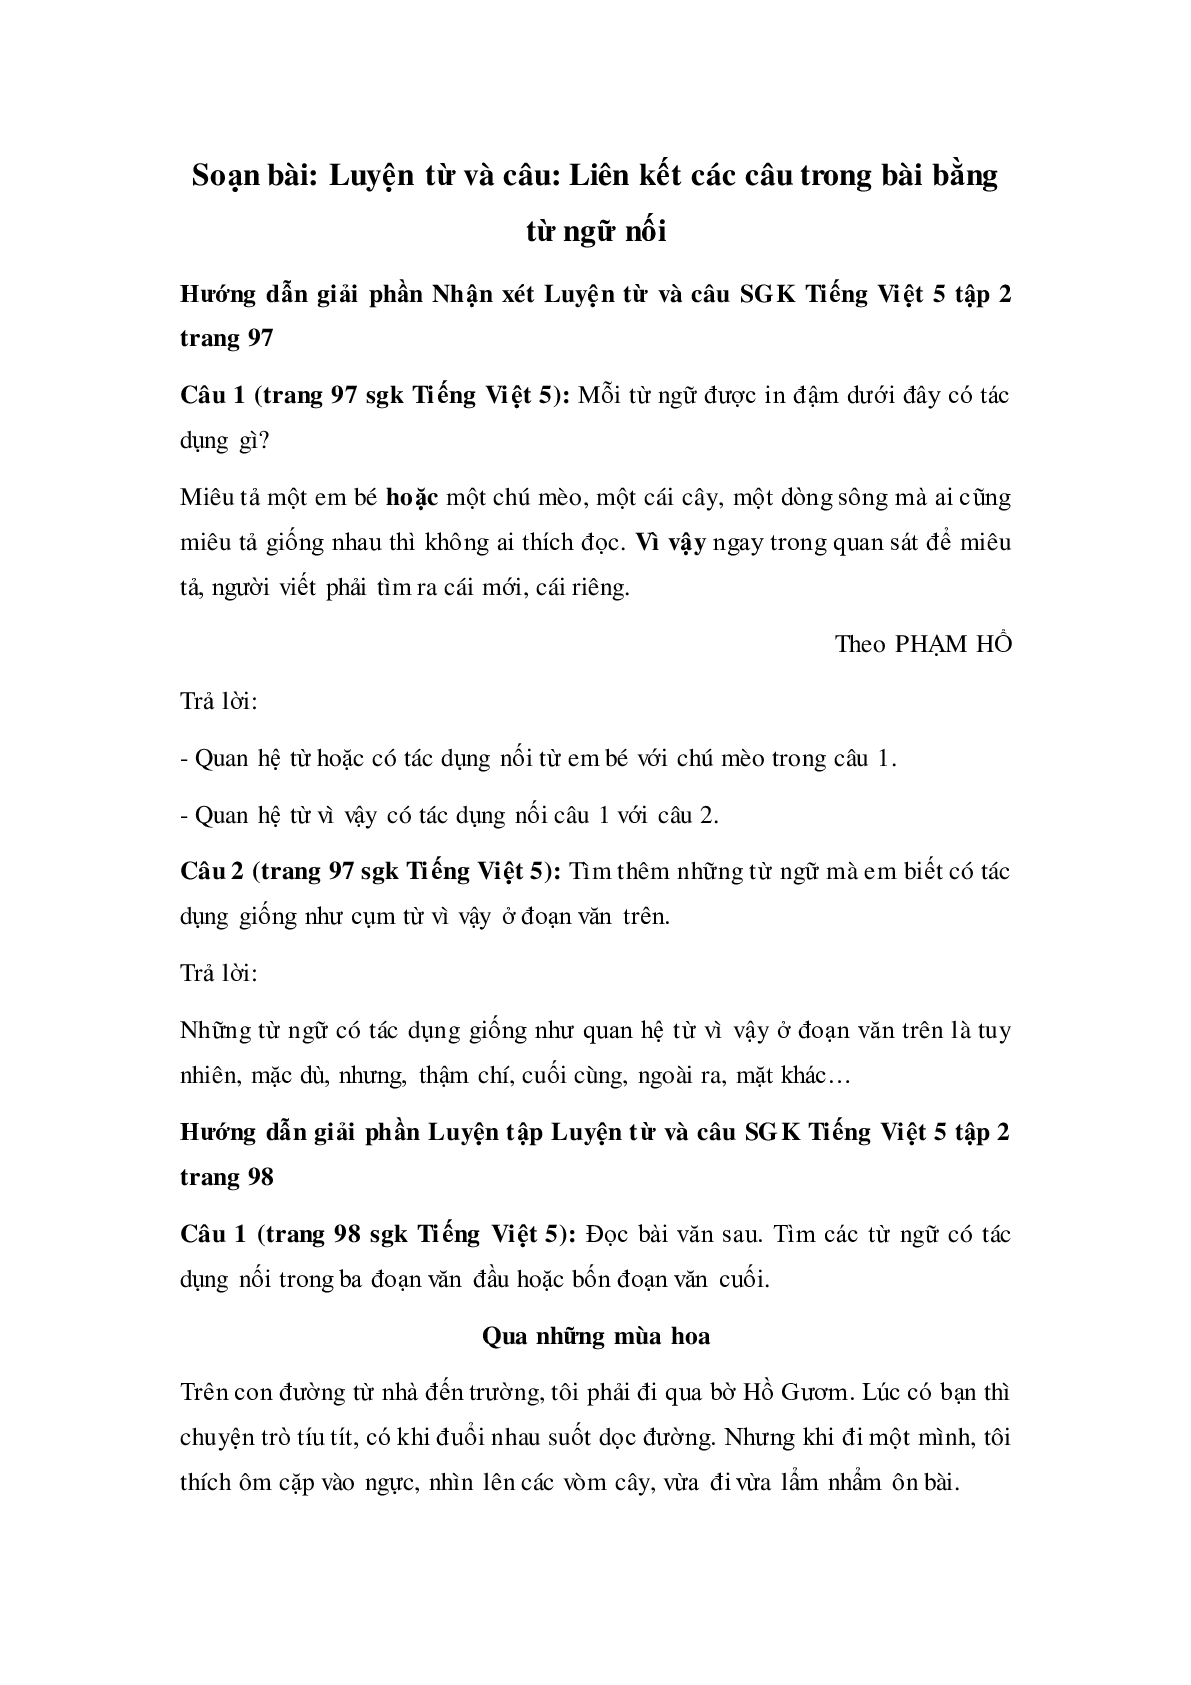 Soạn Tiếng Việt lớp 5: Luyện từ và câu: Liên kết các câu trong bài bằng từ ngữ nối mới nhất (trang 1)